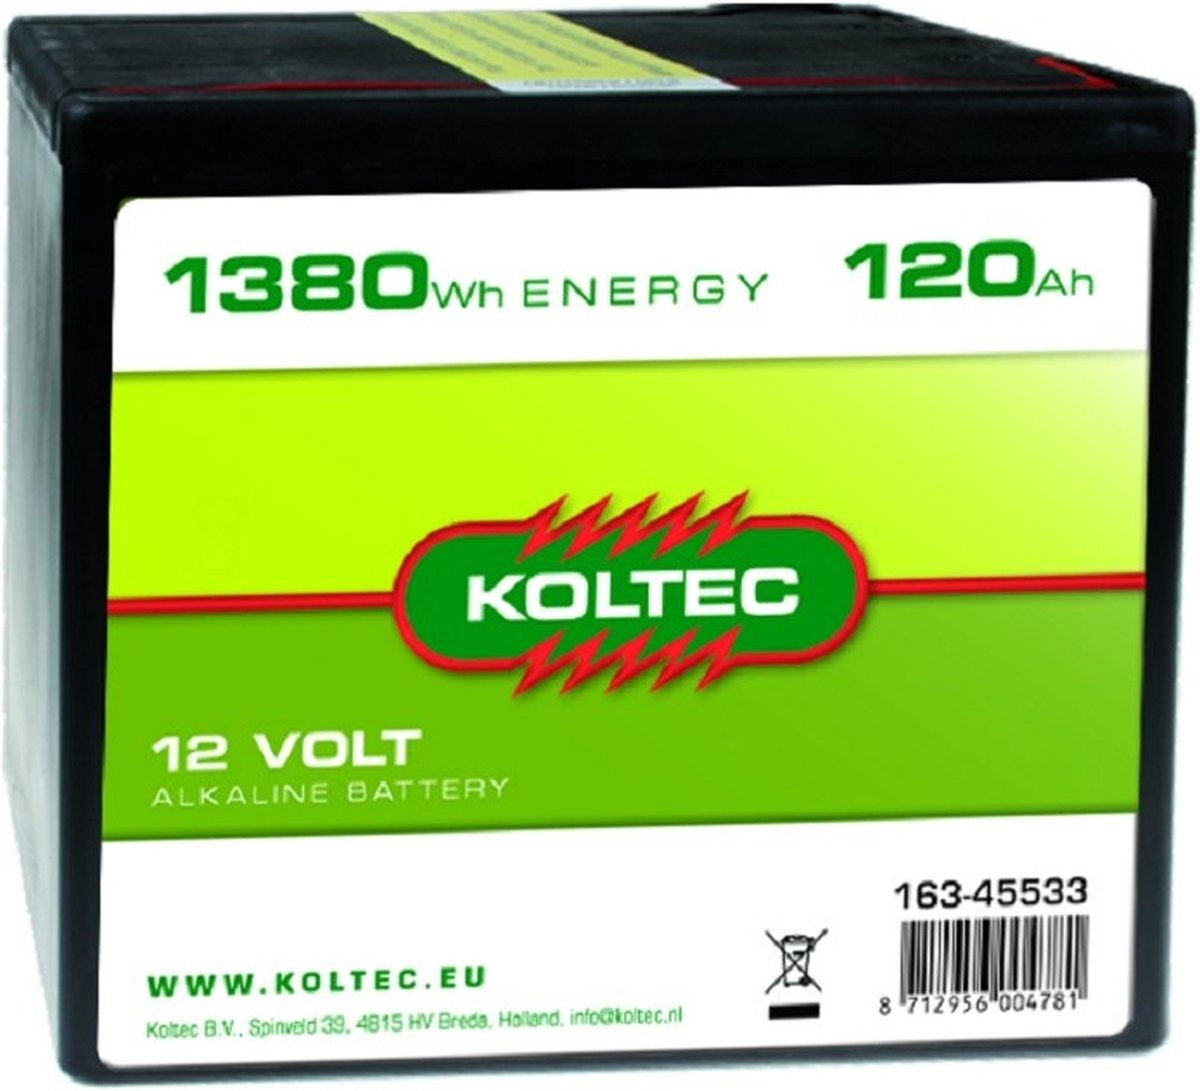 Koltec Batterij 12 Volt 1380 WH 120 Ah - Koltec